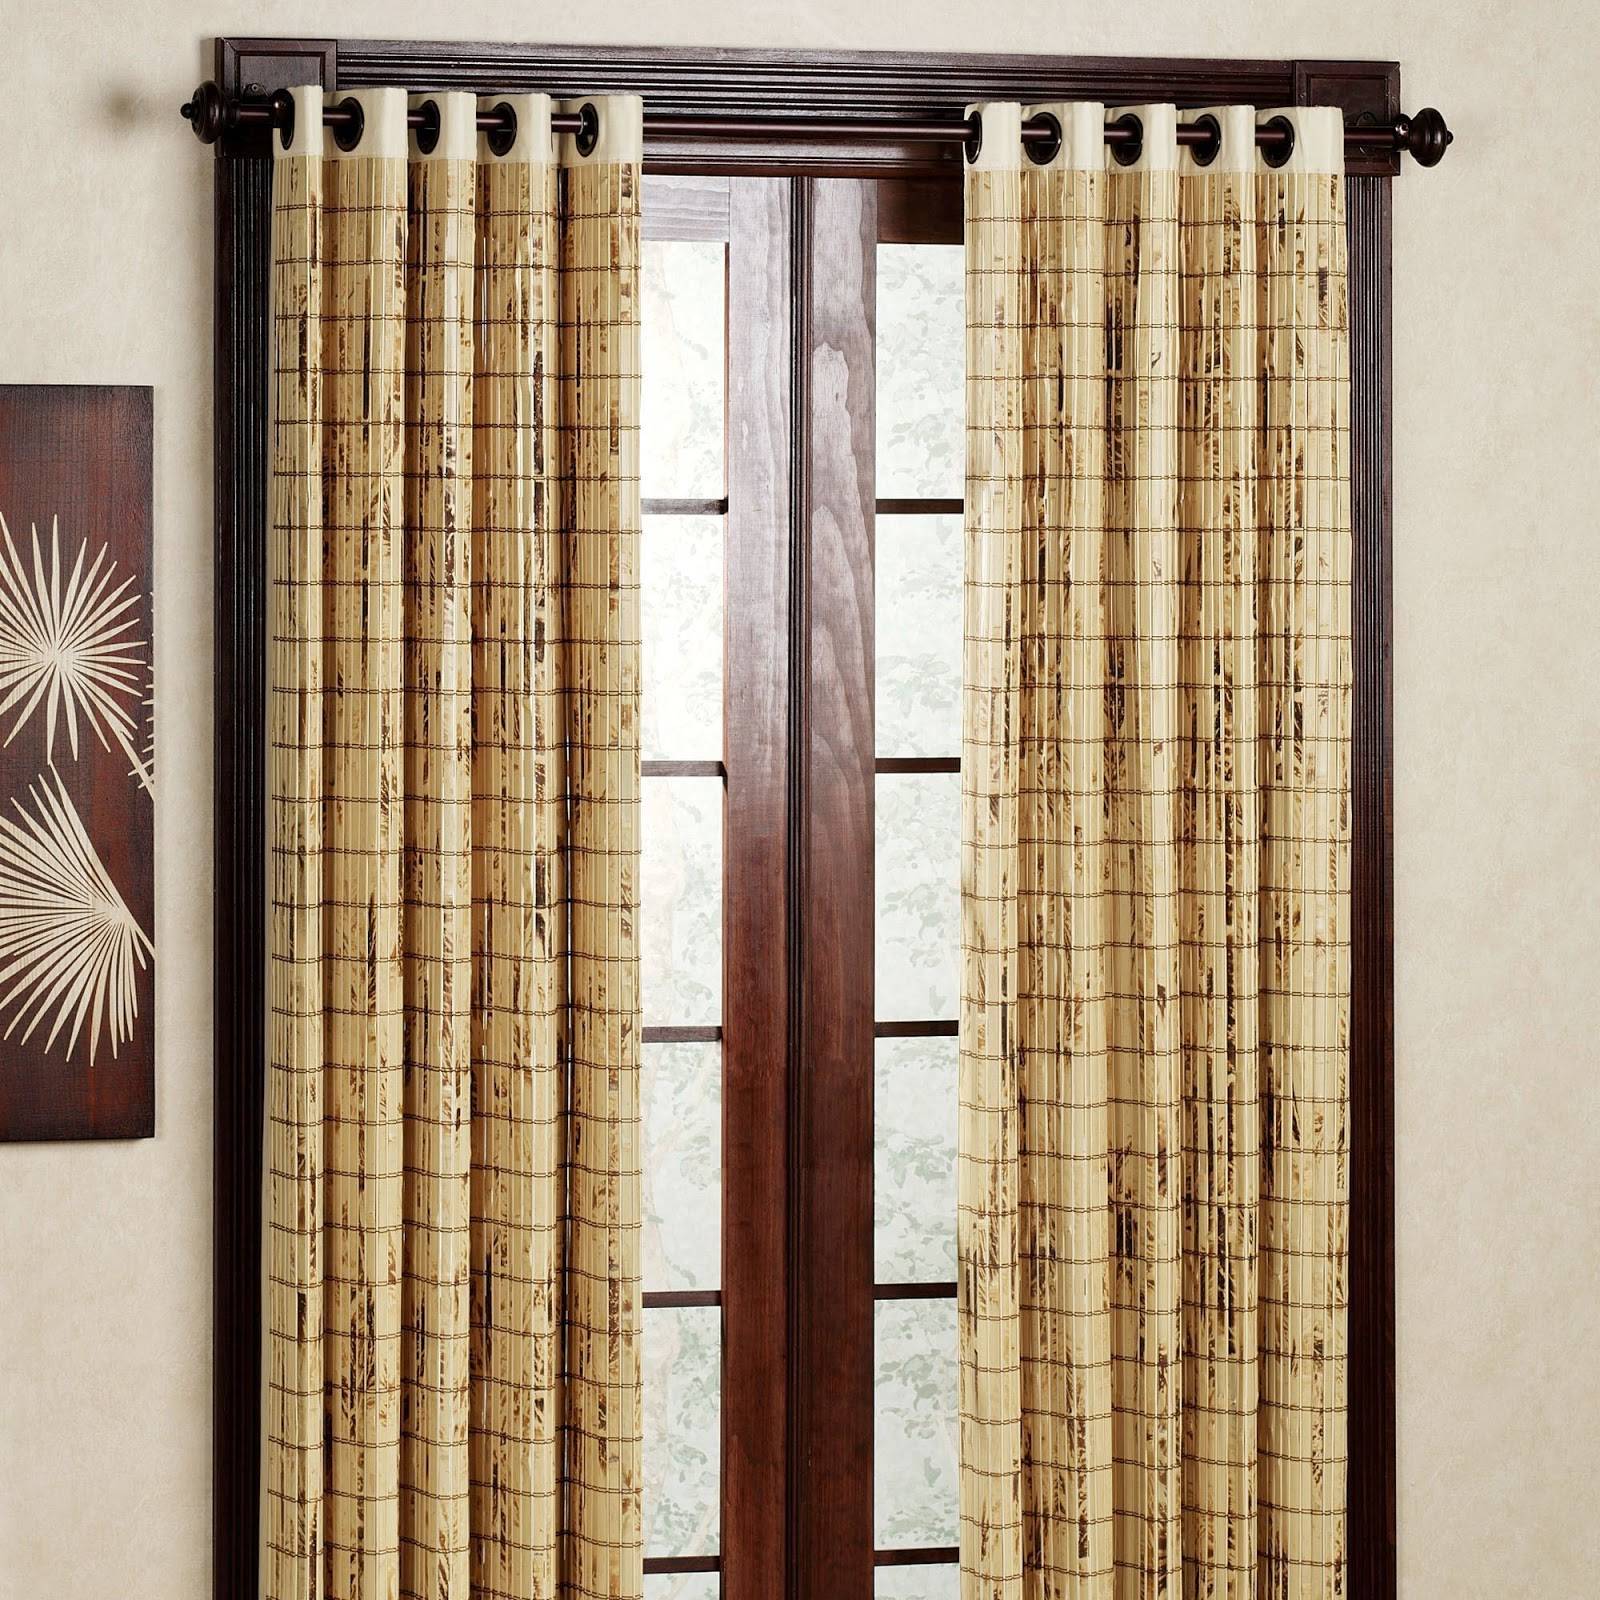 Декоративная шторка. Валберис бамбуковые шторы. Бамбуковые шторы на дверь. Шторы на дверной проем. Деревянные занавески.